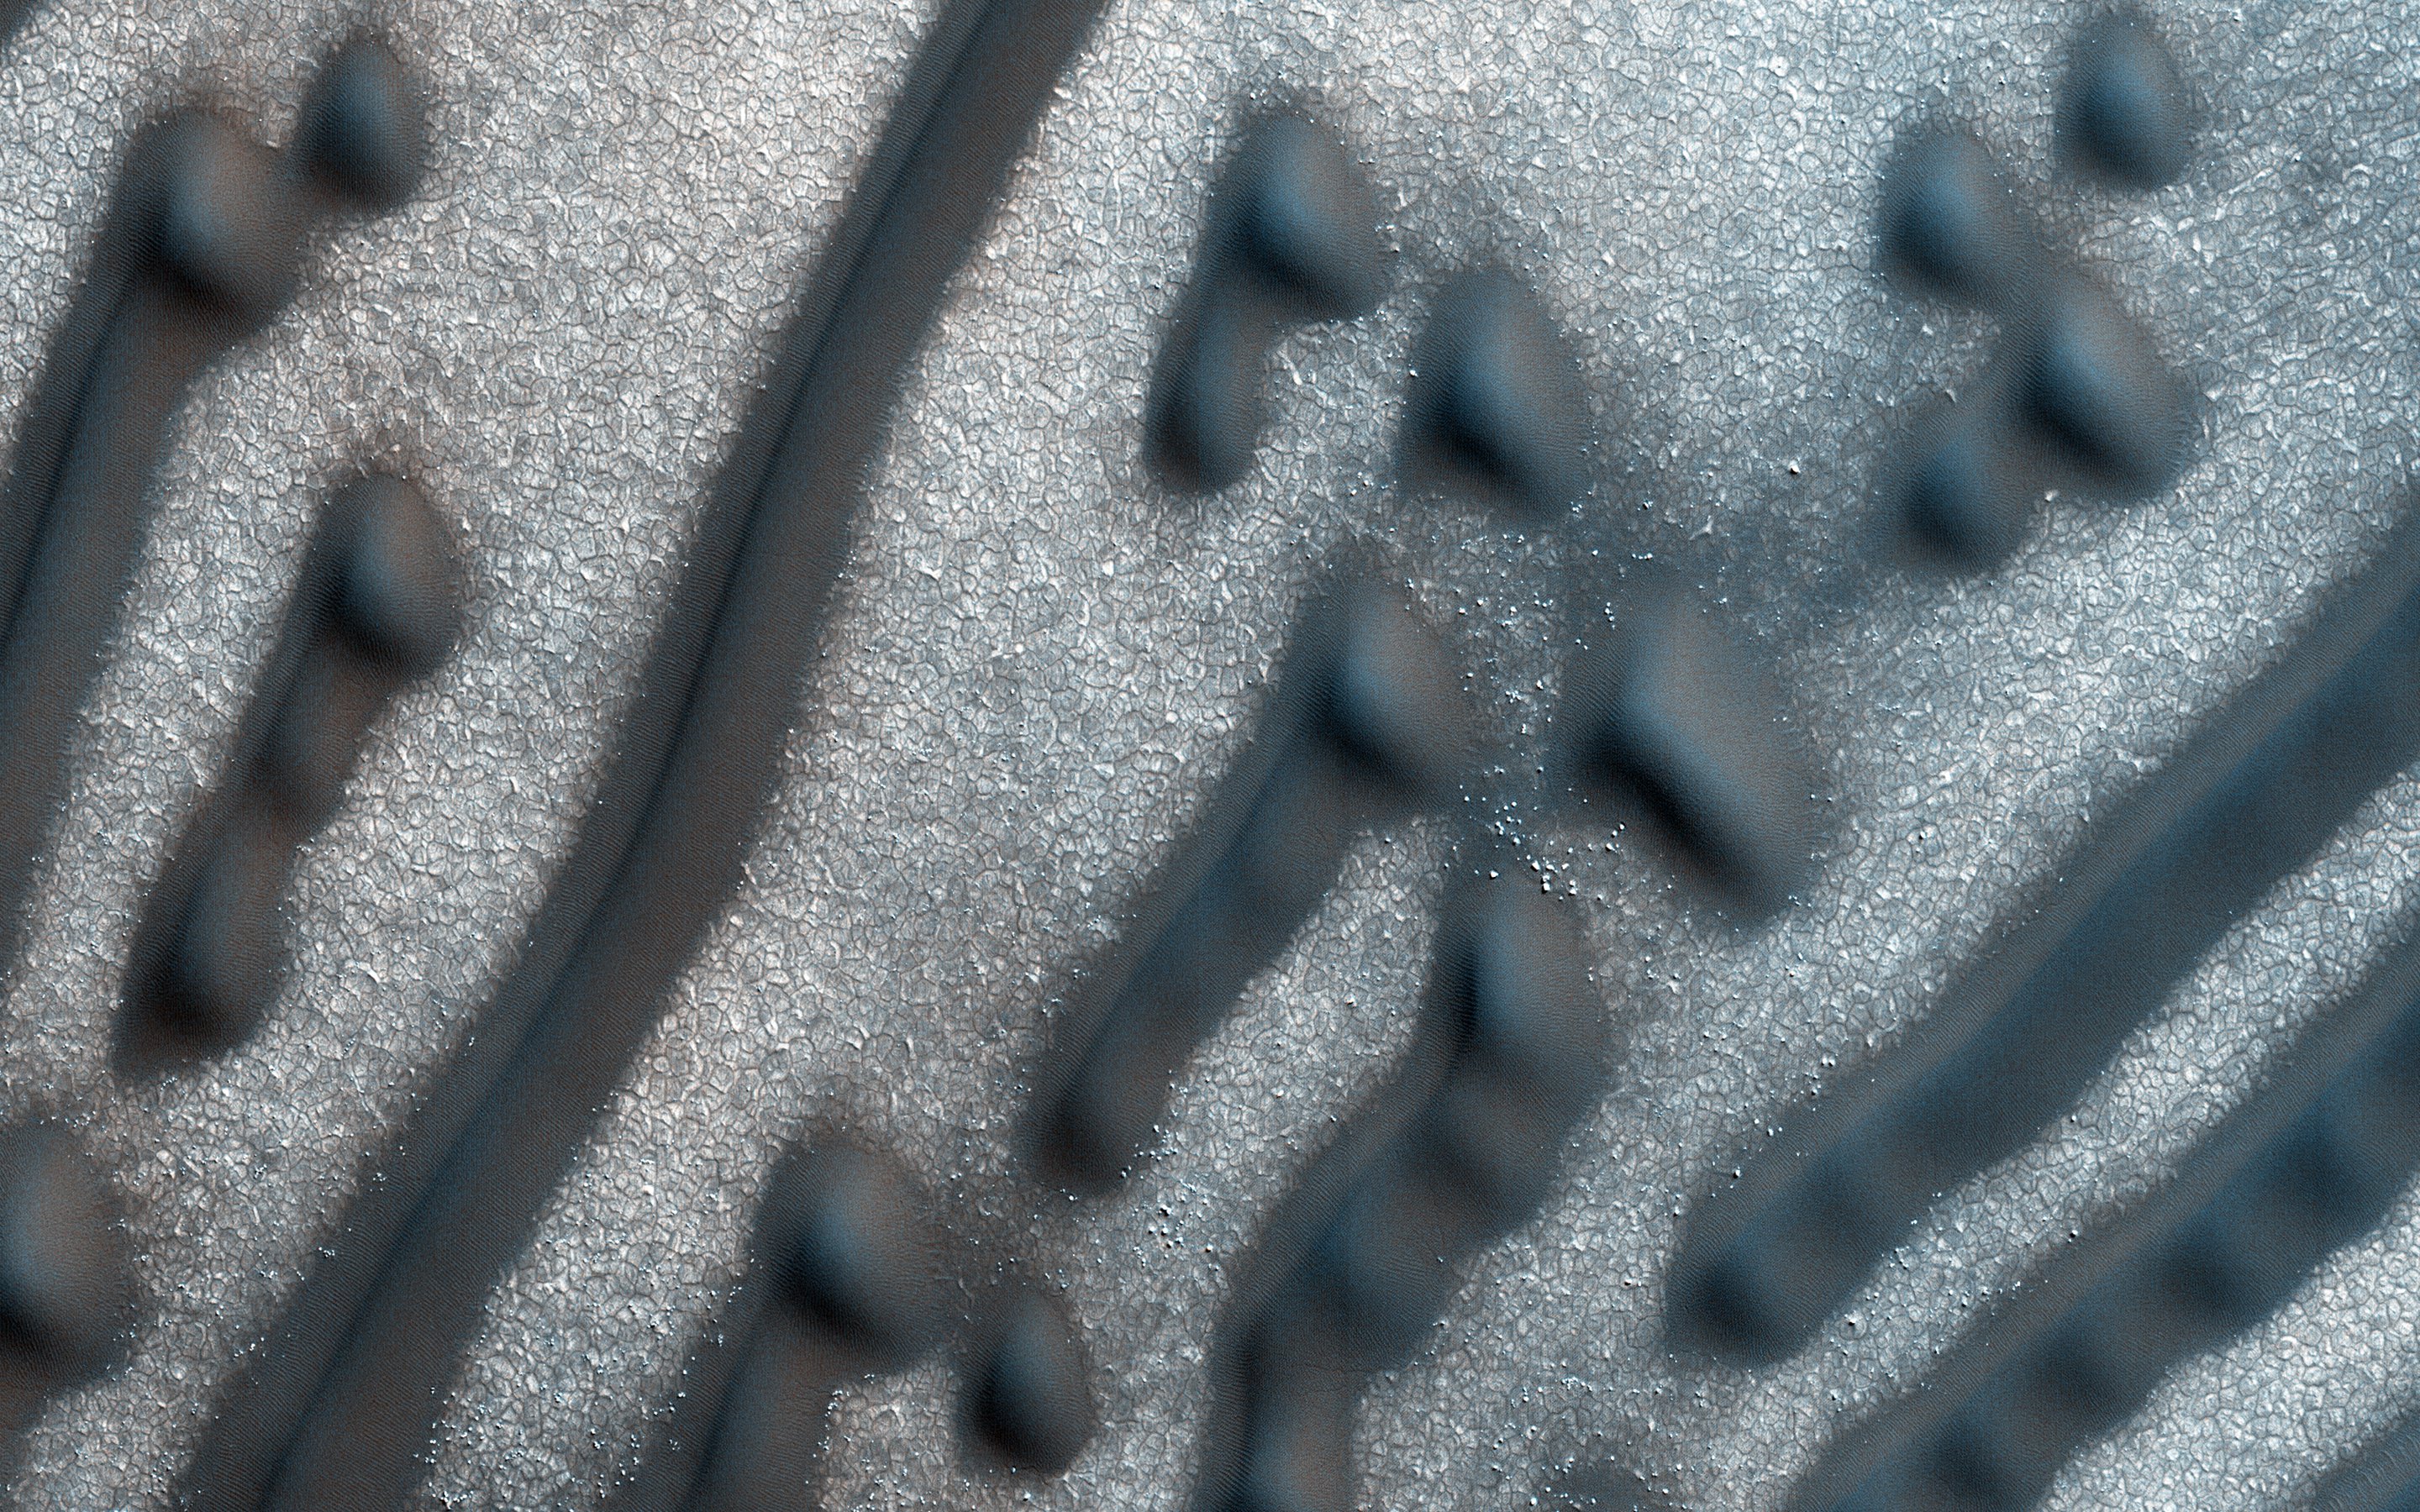 NASA phát hiện những đoạn mã Morse bí ẩn trên Hỏa tinh